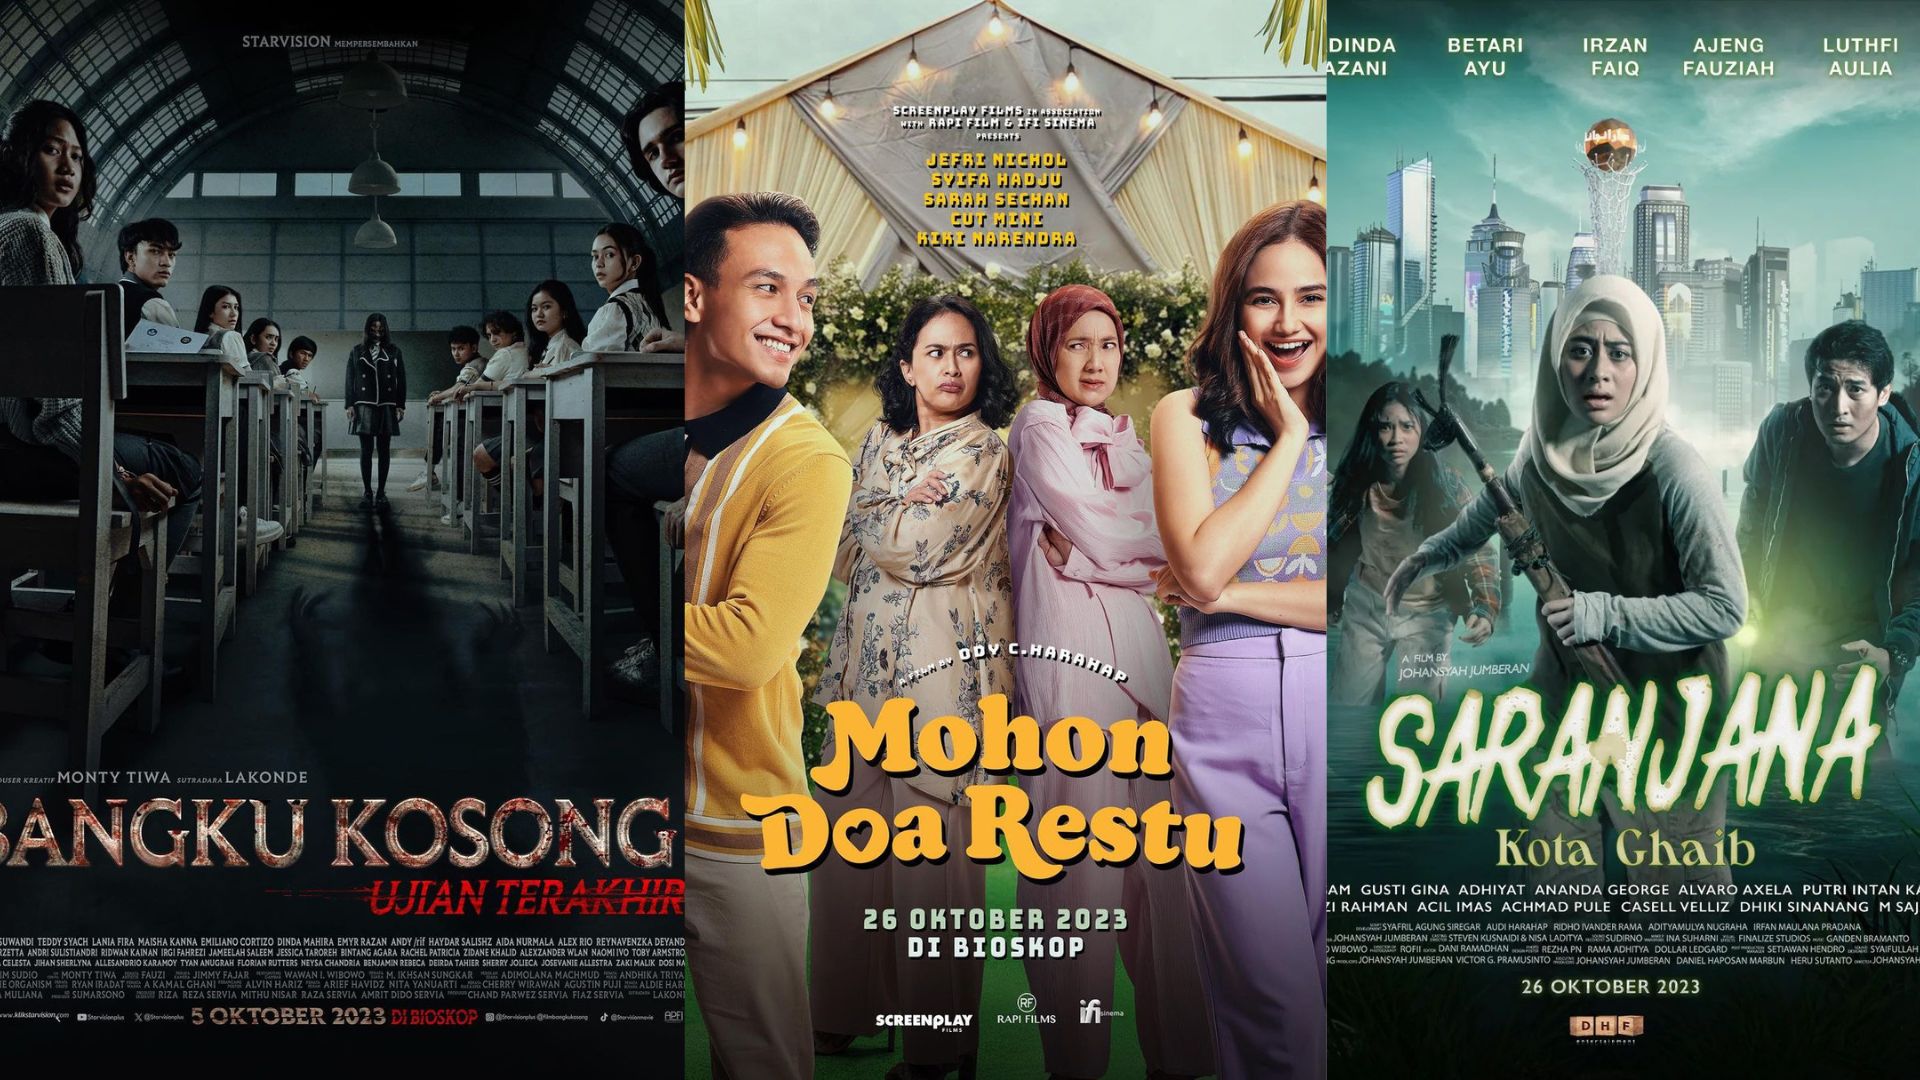 Hypeabis 11 Film Indonesia Tayang Di Bioskop Oktober 2023 Genre Horor Dominan 